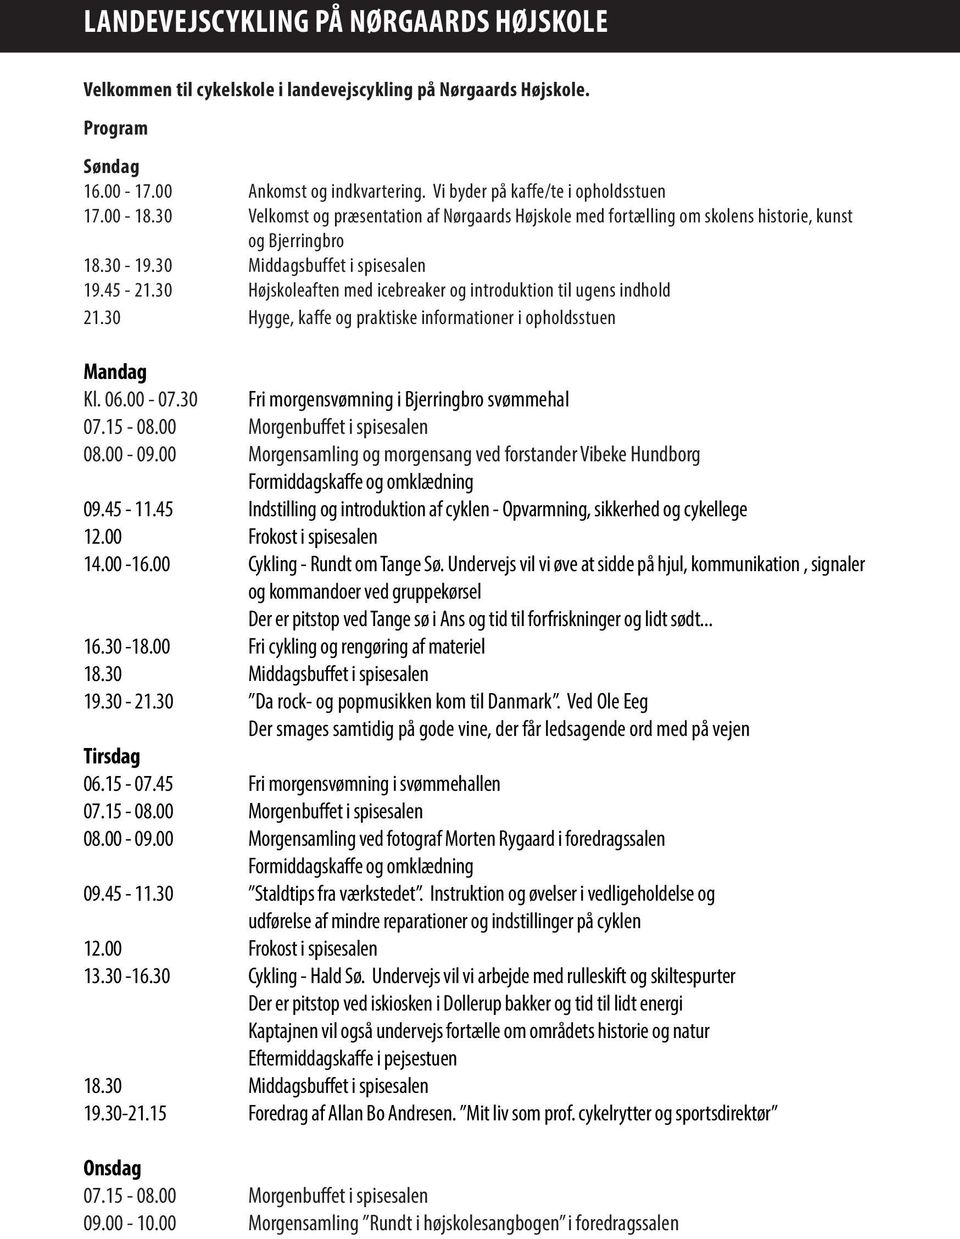 30 Højskoleaften med icebreaker og introduktion til ugens indhold 21.30 Hygge, kaffe og praktiske informationer i opholdsstuen Mandag Kl. 06.00-07.30 Fri morgensvømning i Bjerringbro svømmehal 07.